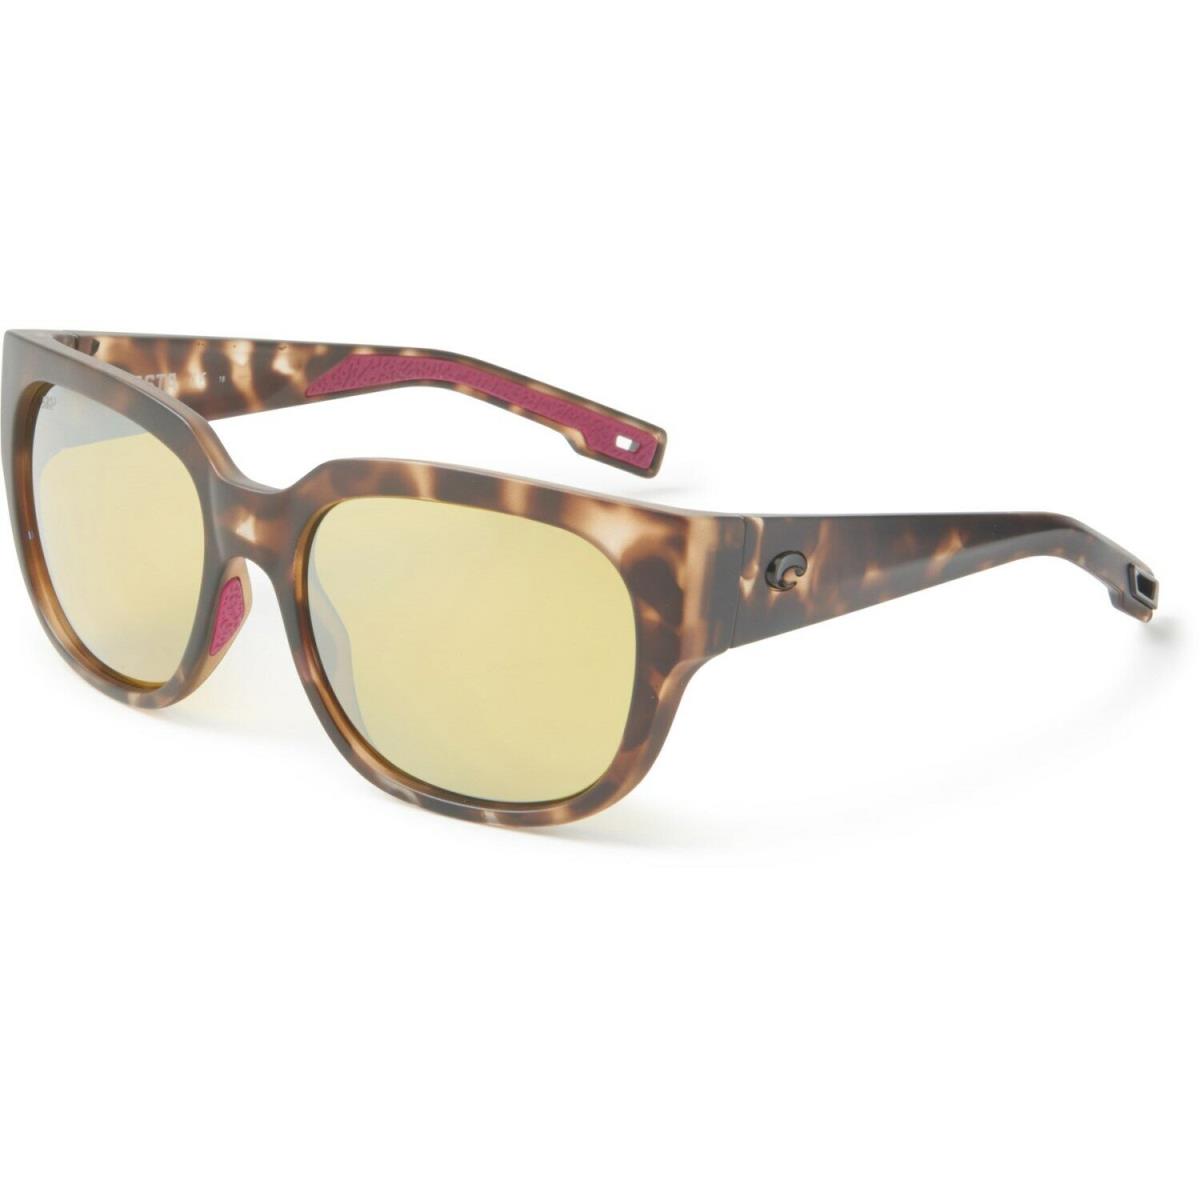 Costa Del Mar Waterwoman Sunglasses - Polarized - Multicolor Frame